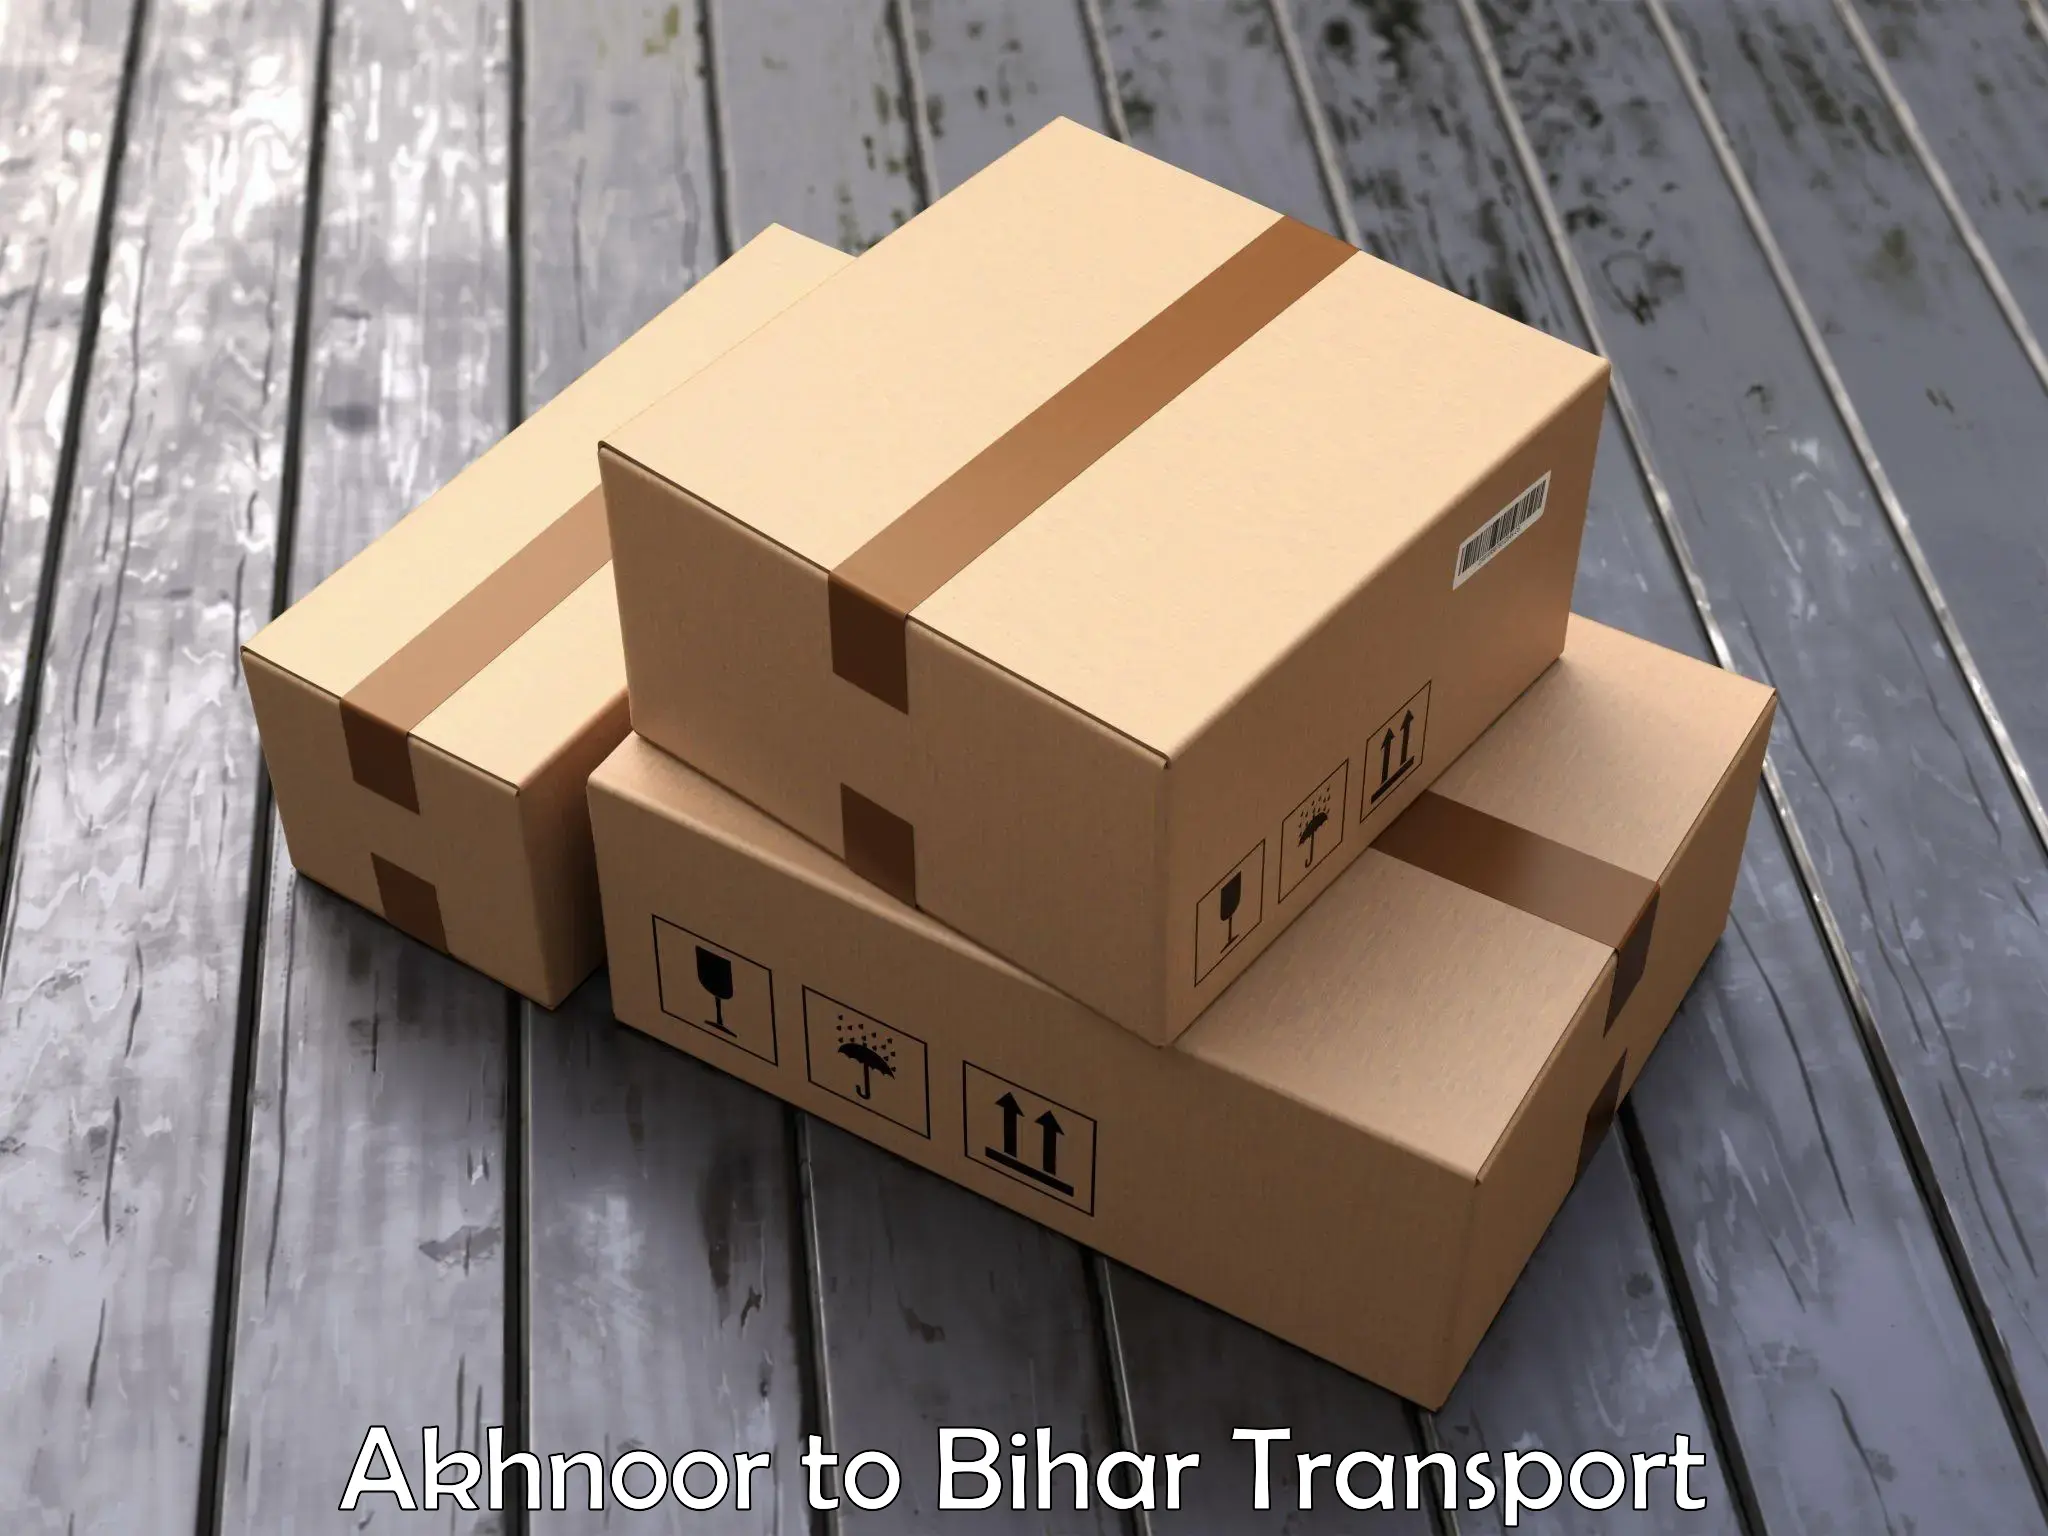 Furniture transport service Akhnoor to Bihar